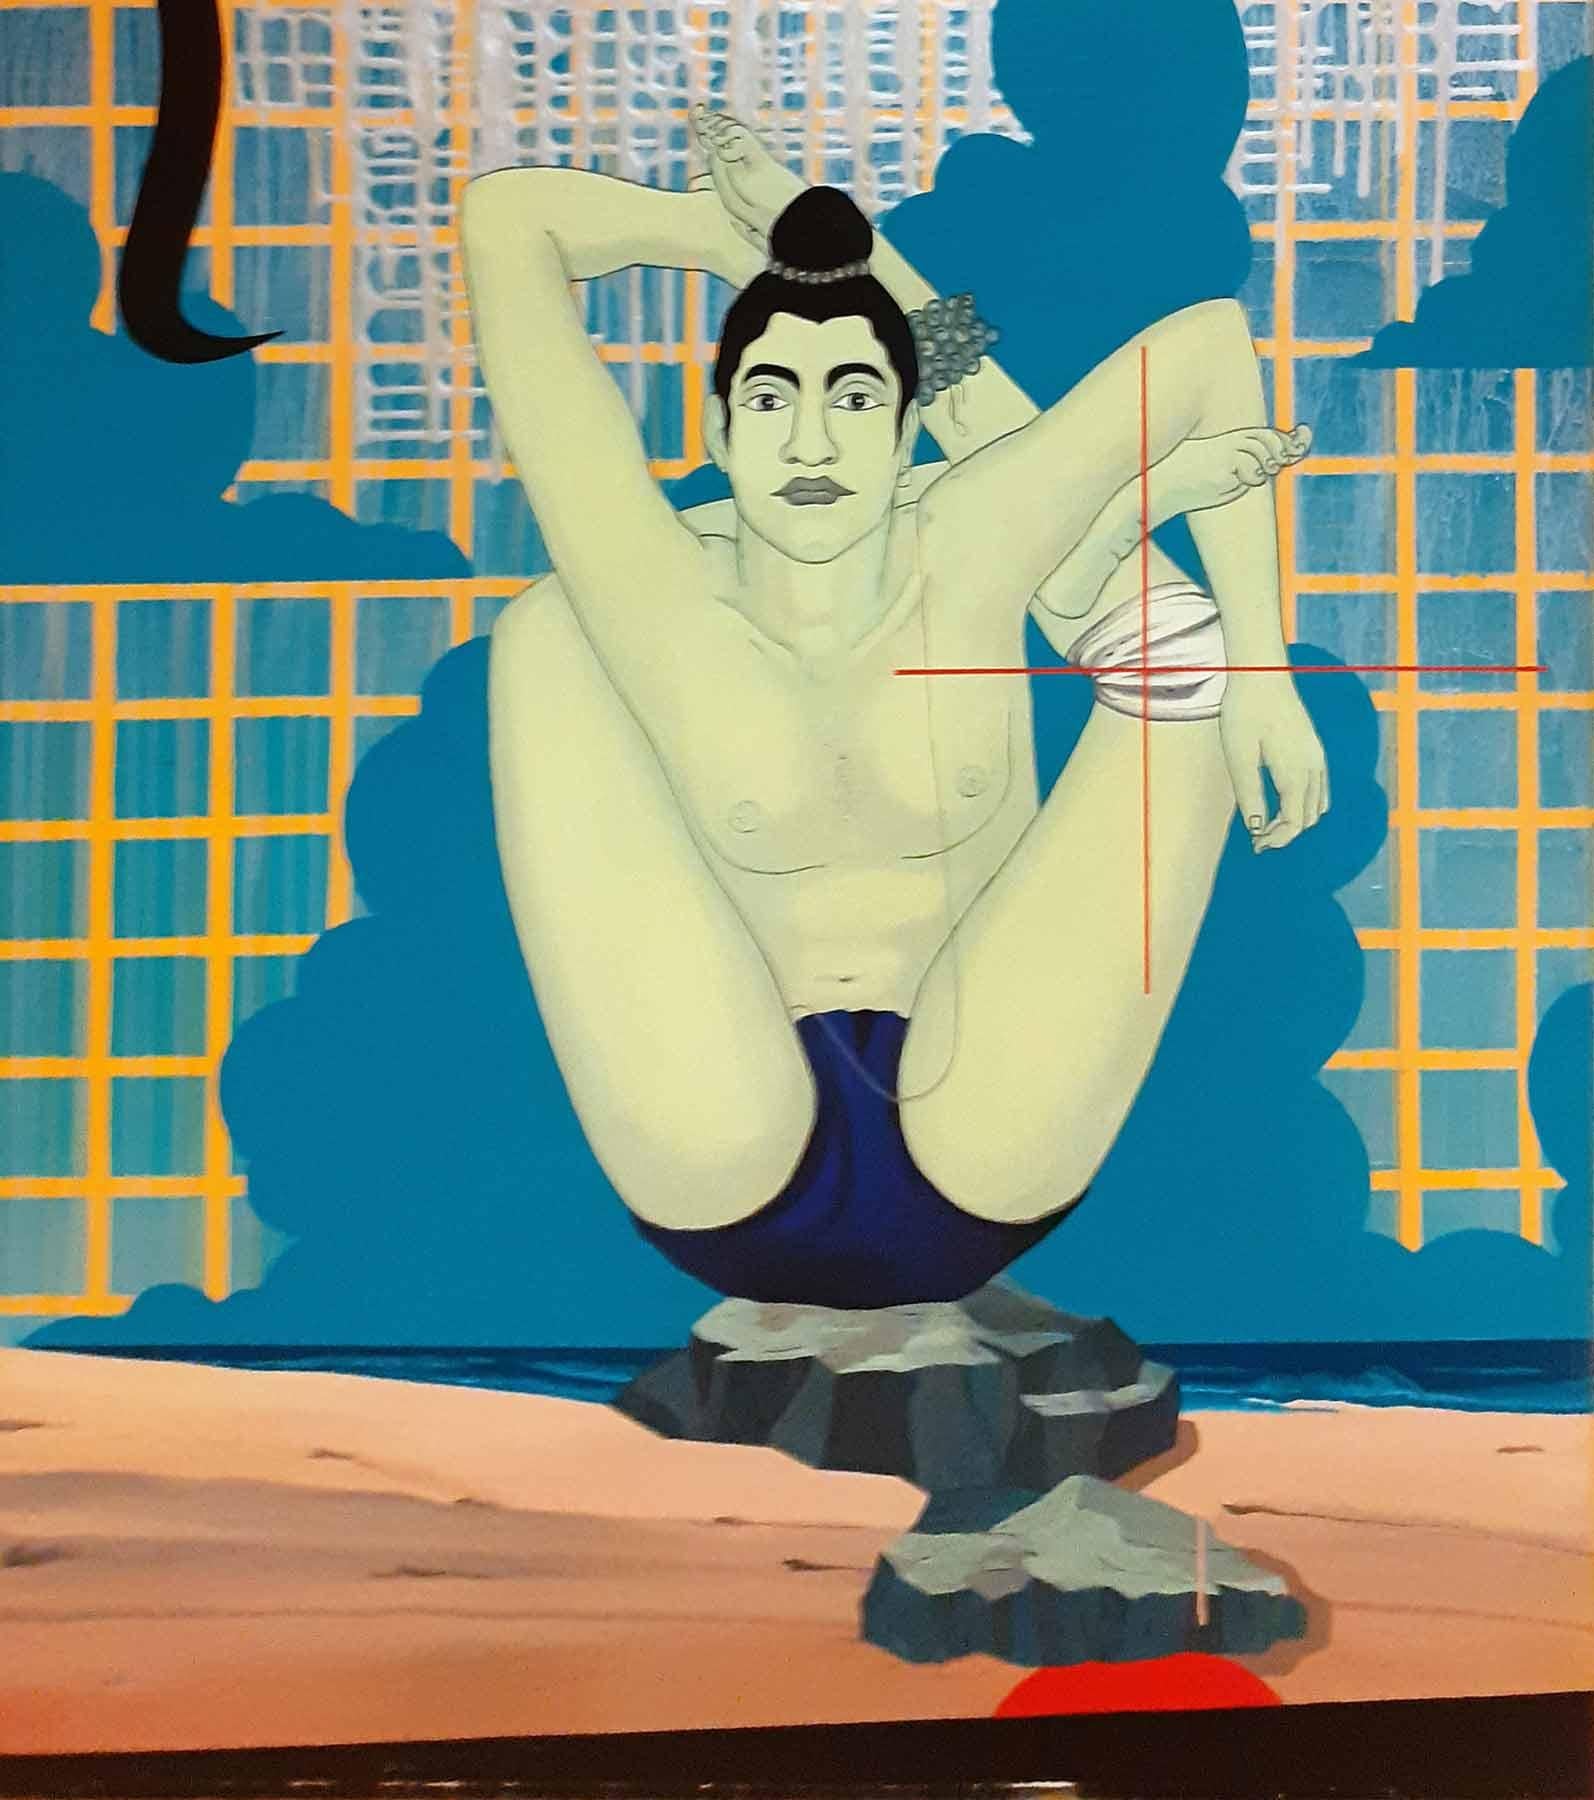 Birendra Pani  - Gotipua Dancer (Die prekäre Existenz)  - 66 x 42 Zoll (ungerahmtes Format)
Acryl auf Leinwand , 2008
** Wird in gerollter Form geliefert.
  Sollten Sie das Werk in gebrauchsfertigem Zustand wünschen, kontaktieren Sie bitte die